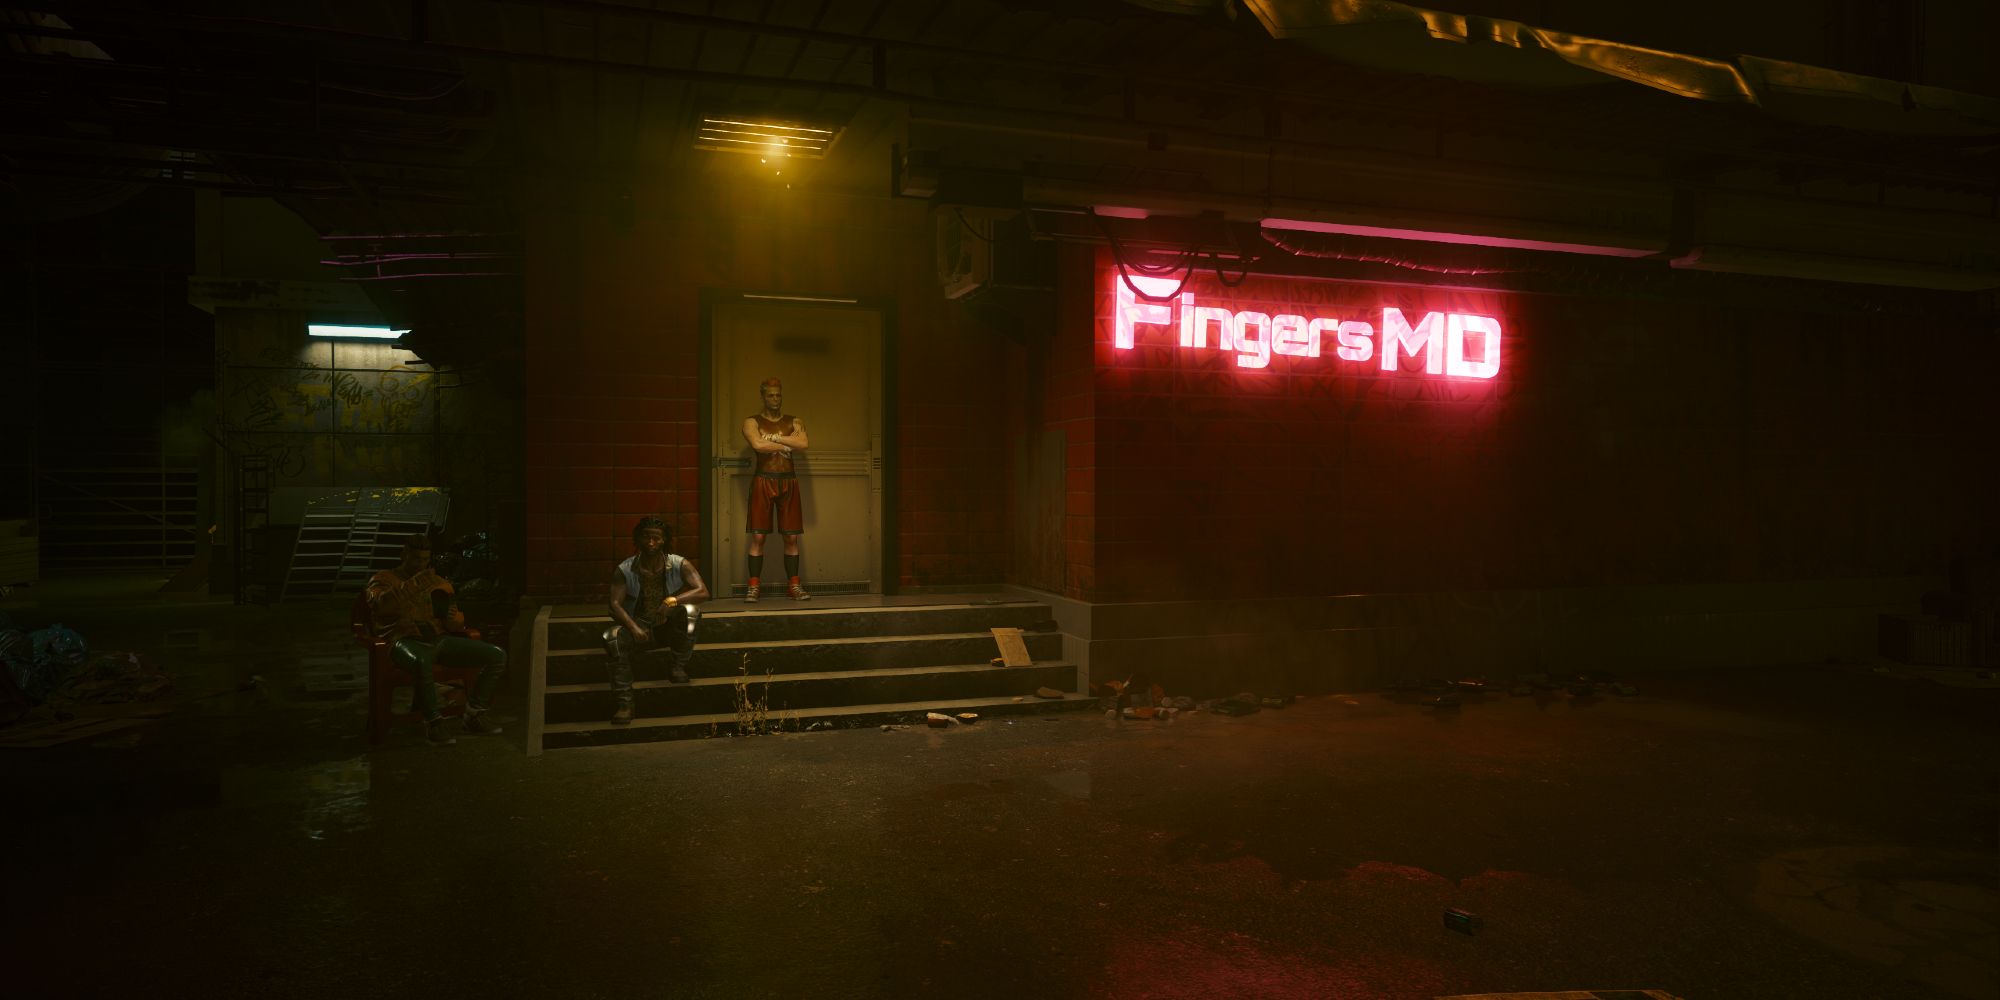 Fingers MD building in Cyberpunk 2077.